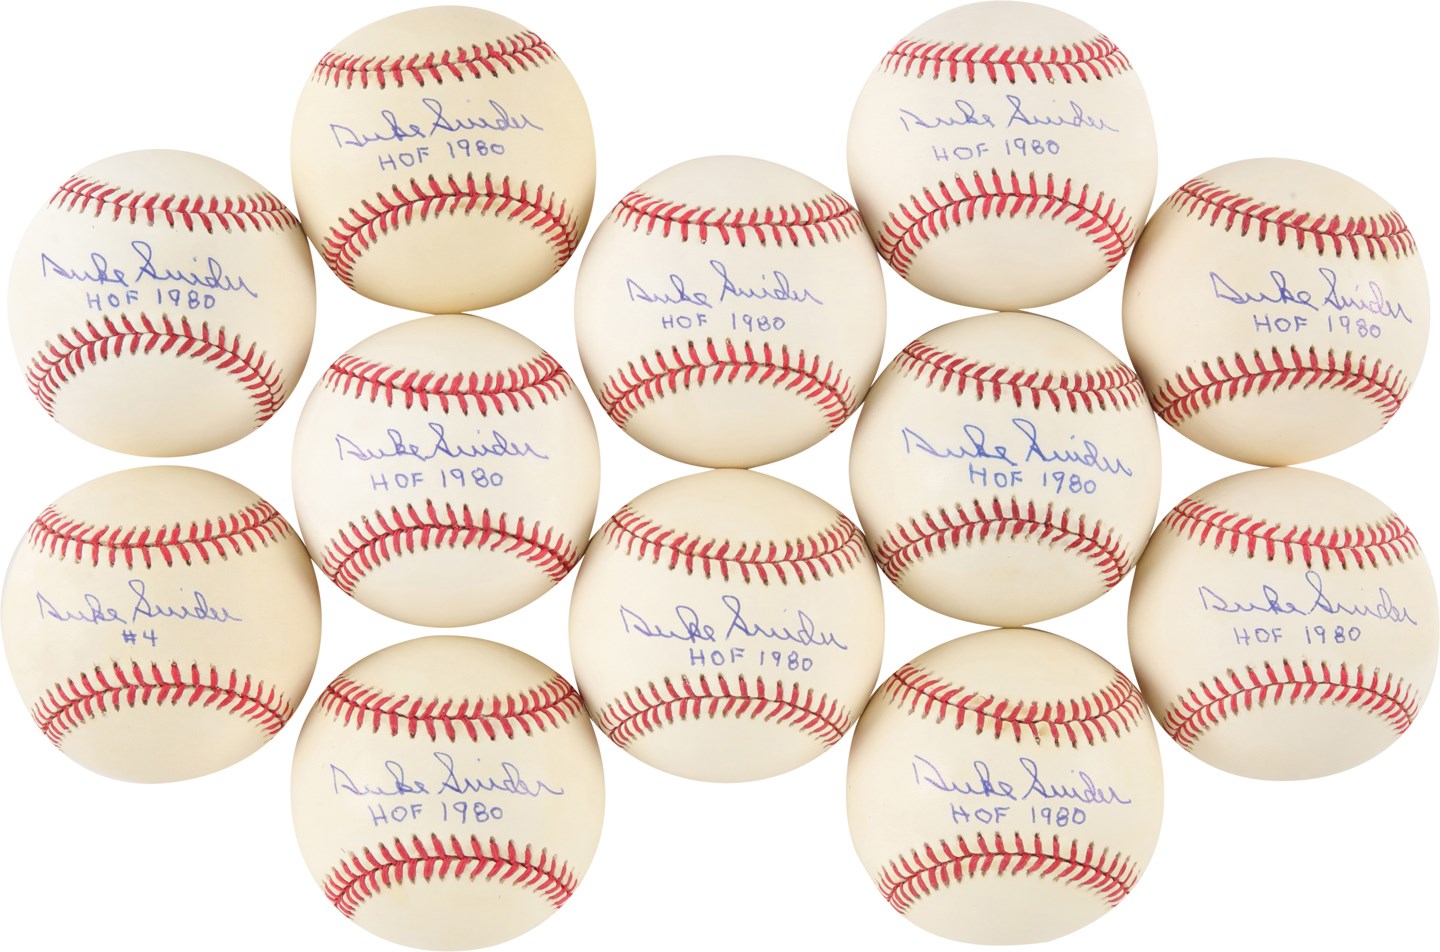 - One Dozen Duke Snider Single Signed Baseballs w/"HOF 1980" Notation